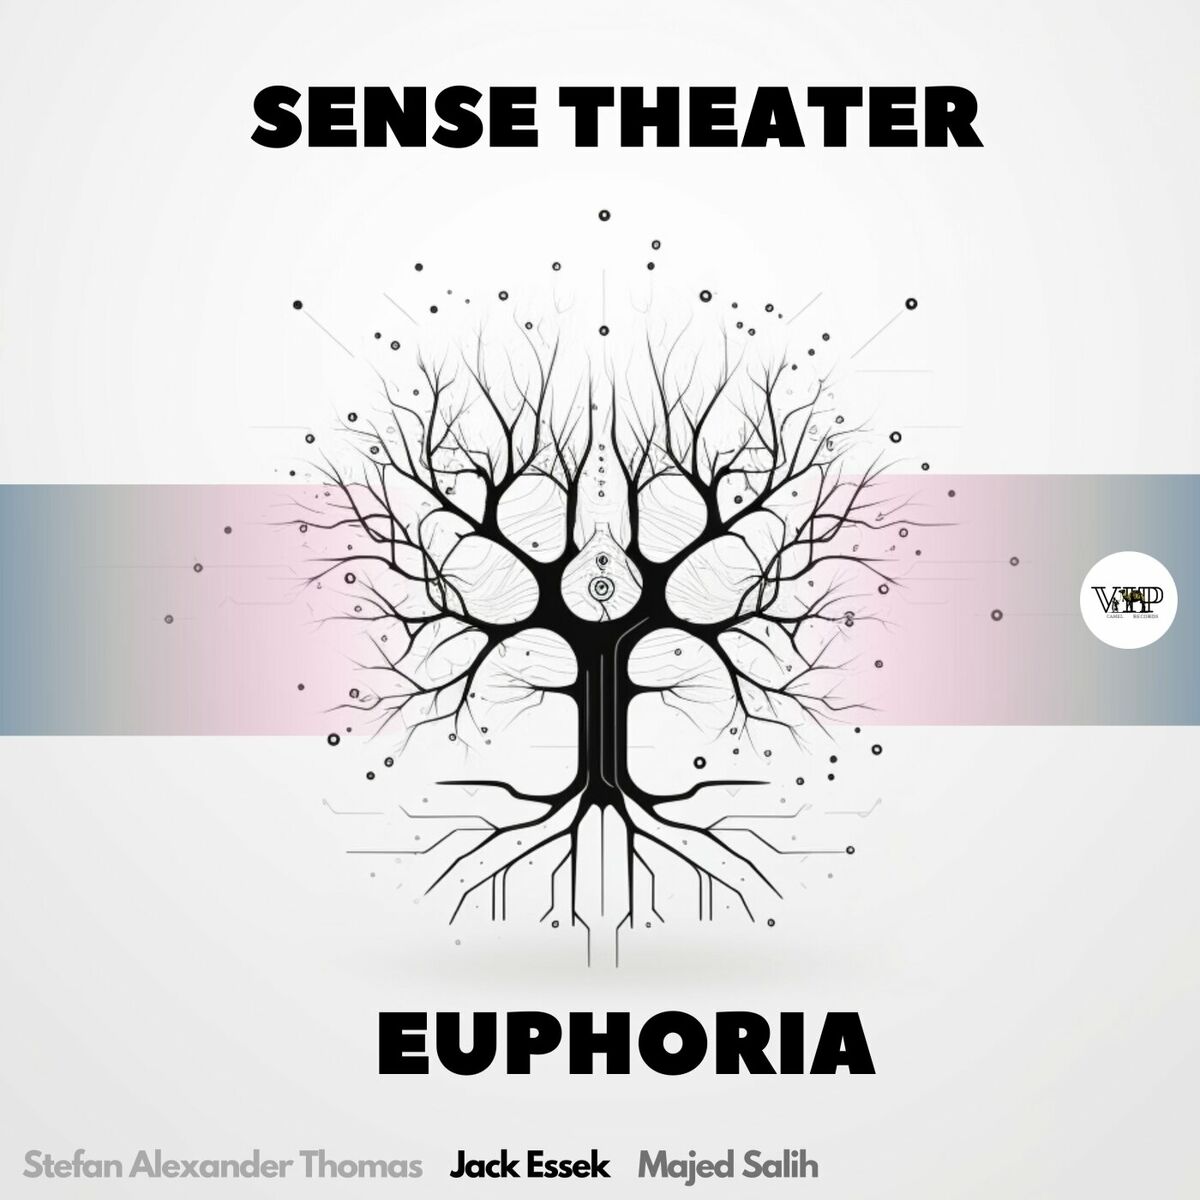 Sense Theater - Euphoria (Majed Salih Remix)